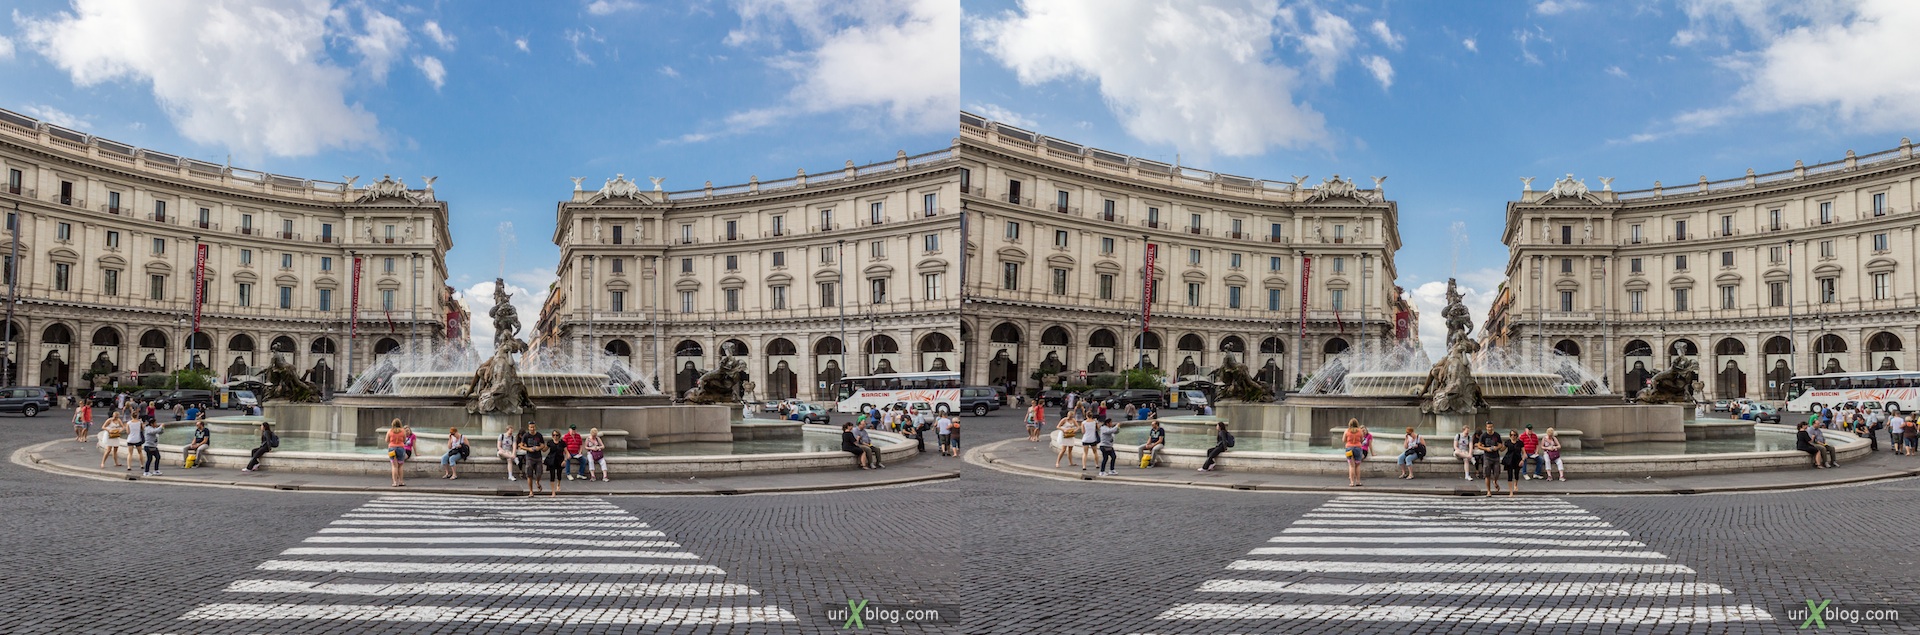 2012, фонтан Наяд, площадь Республики, Рим, Италия, 3D, перекрёстные стереопары, стерео, стереопара, стереопары